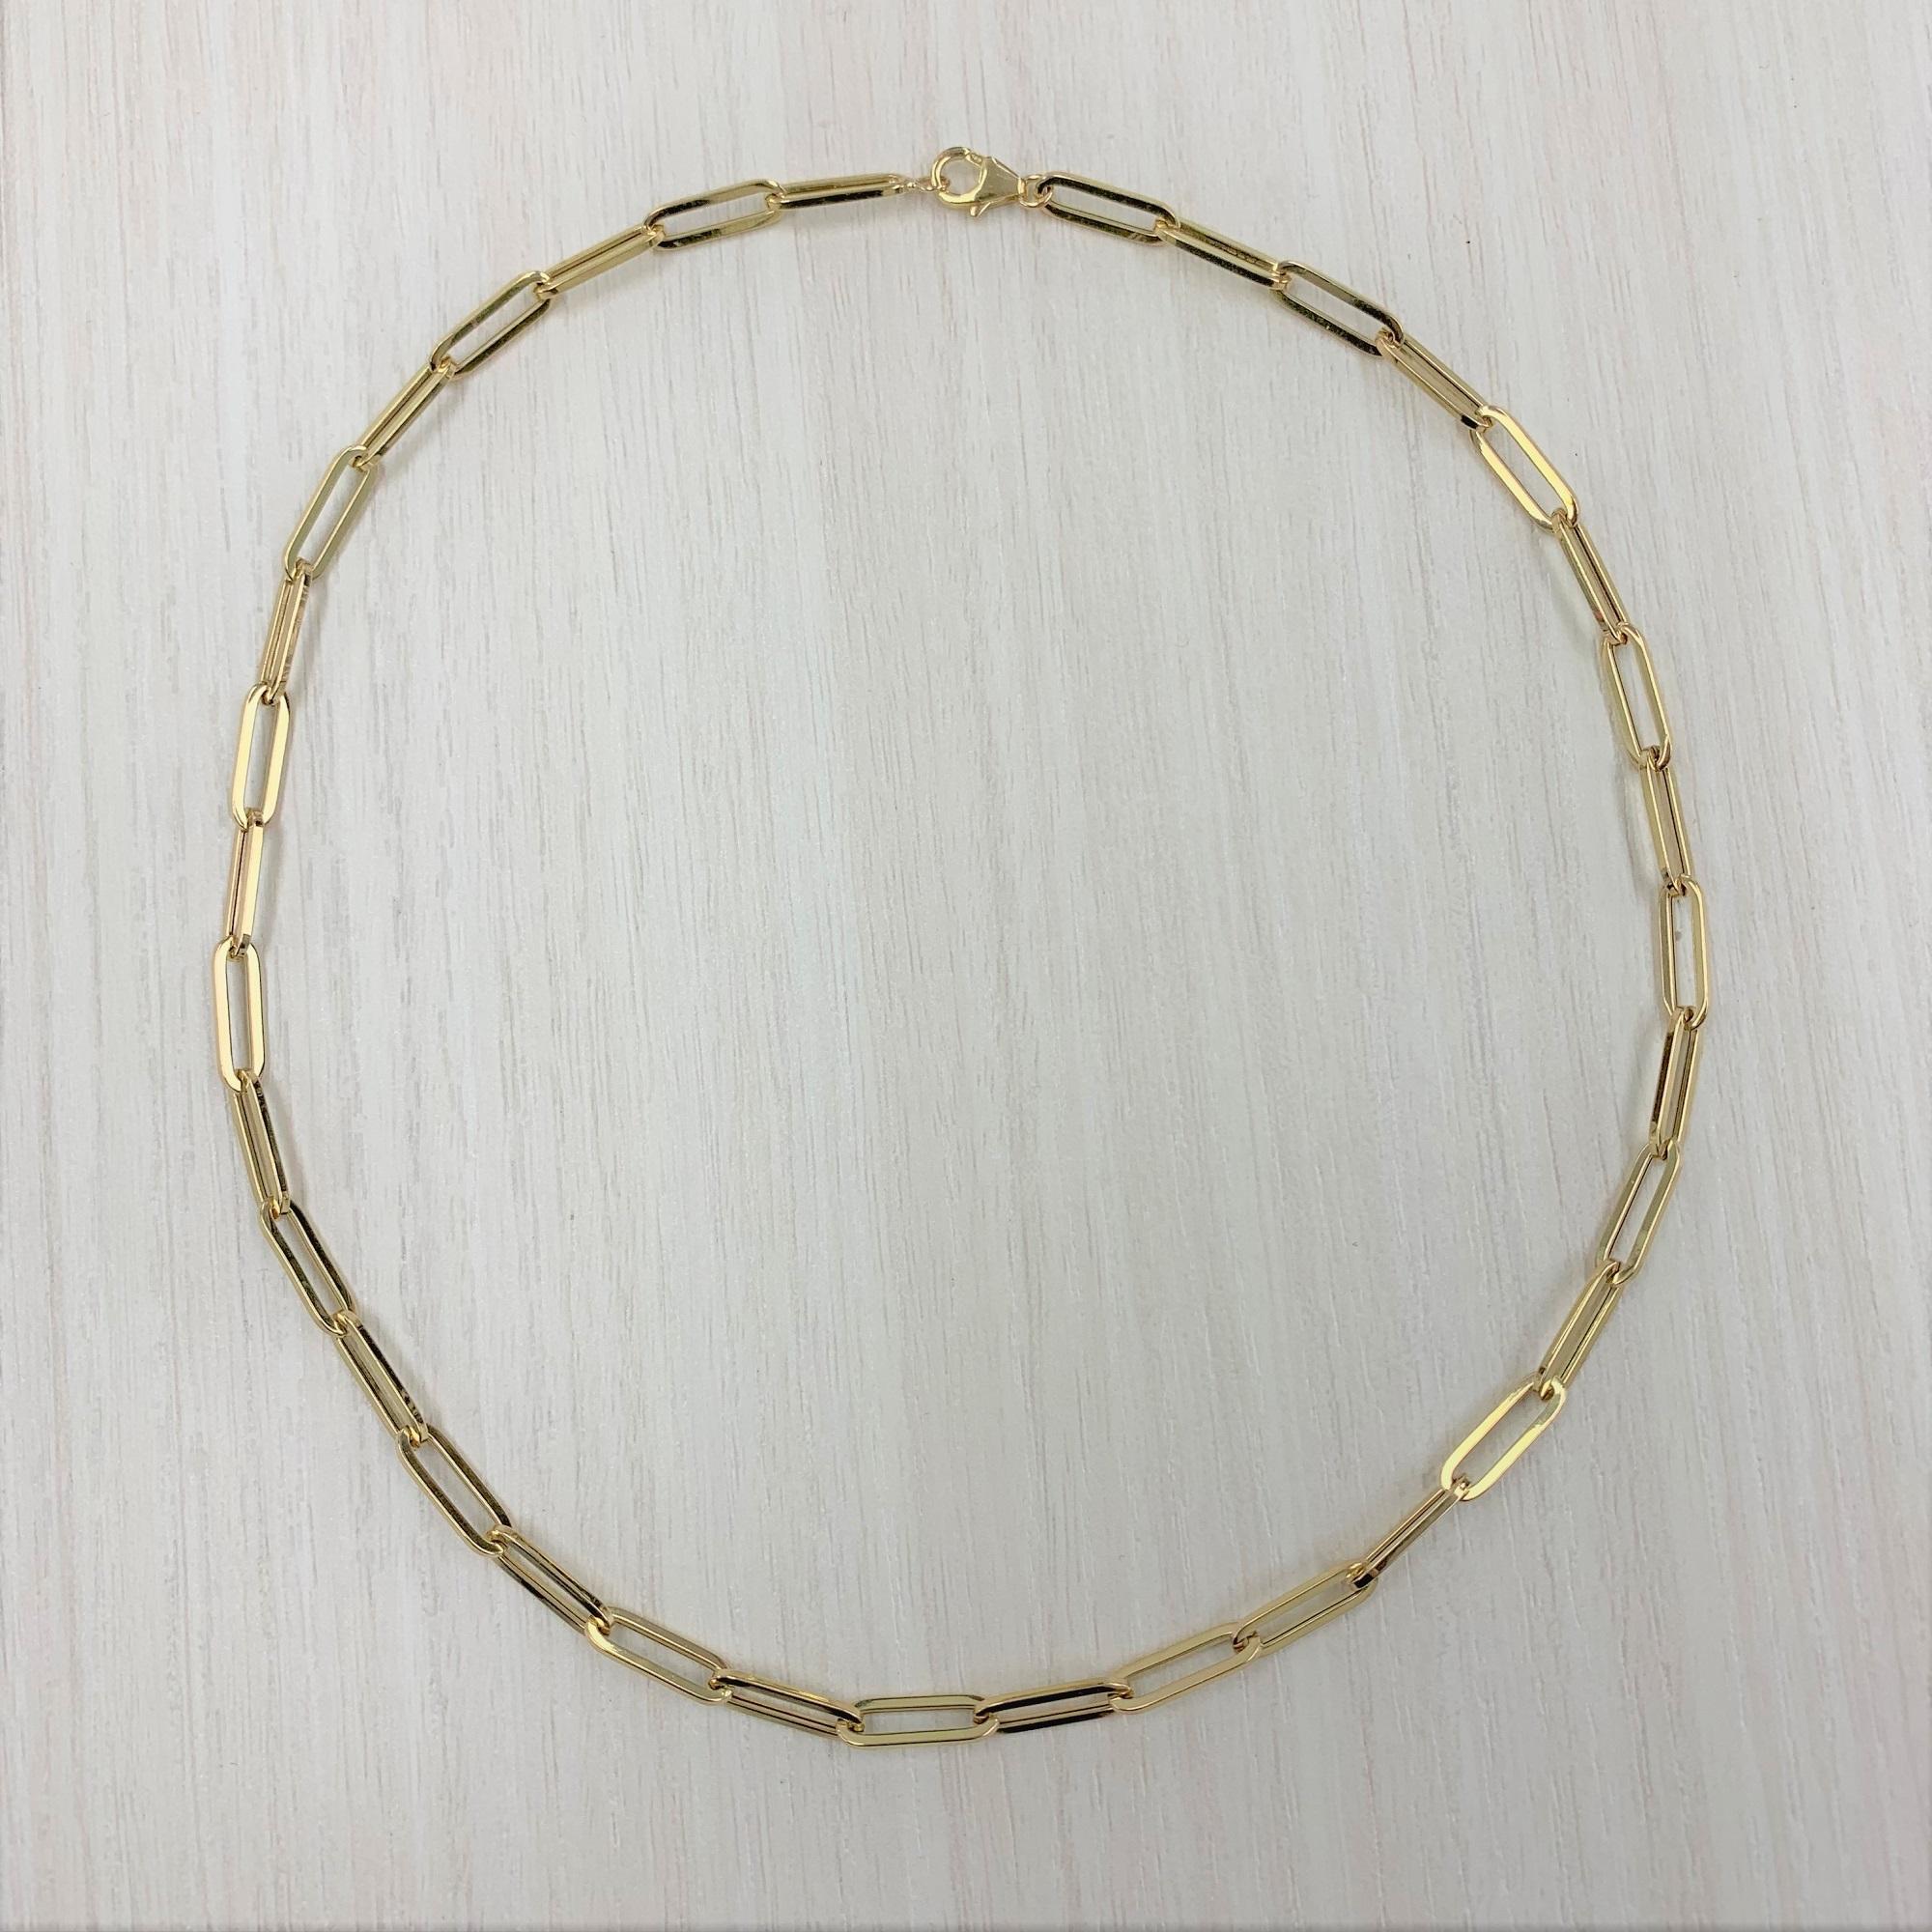  Les colliers en chaîne sont un classique de la boîte à bijoux de toute personne !  Cette chaîne à maillons moyenne en or jaune 14k avec trombone offre de nombreuses options, notamment le choix de la longueur. Achetez-en une et portez-la seule (avec